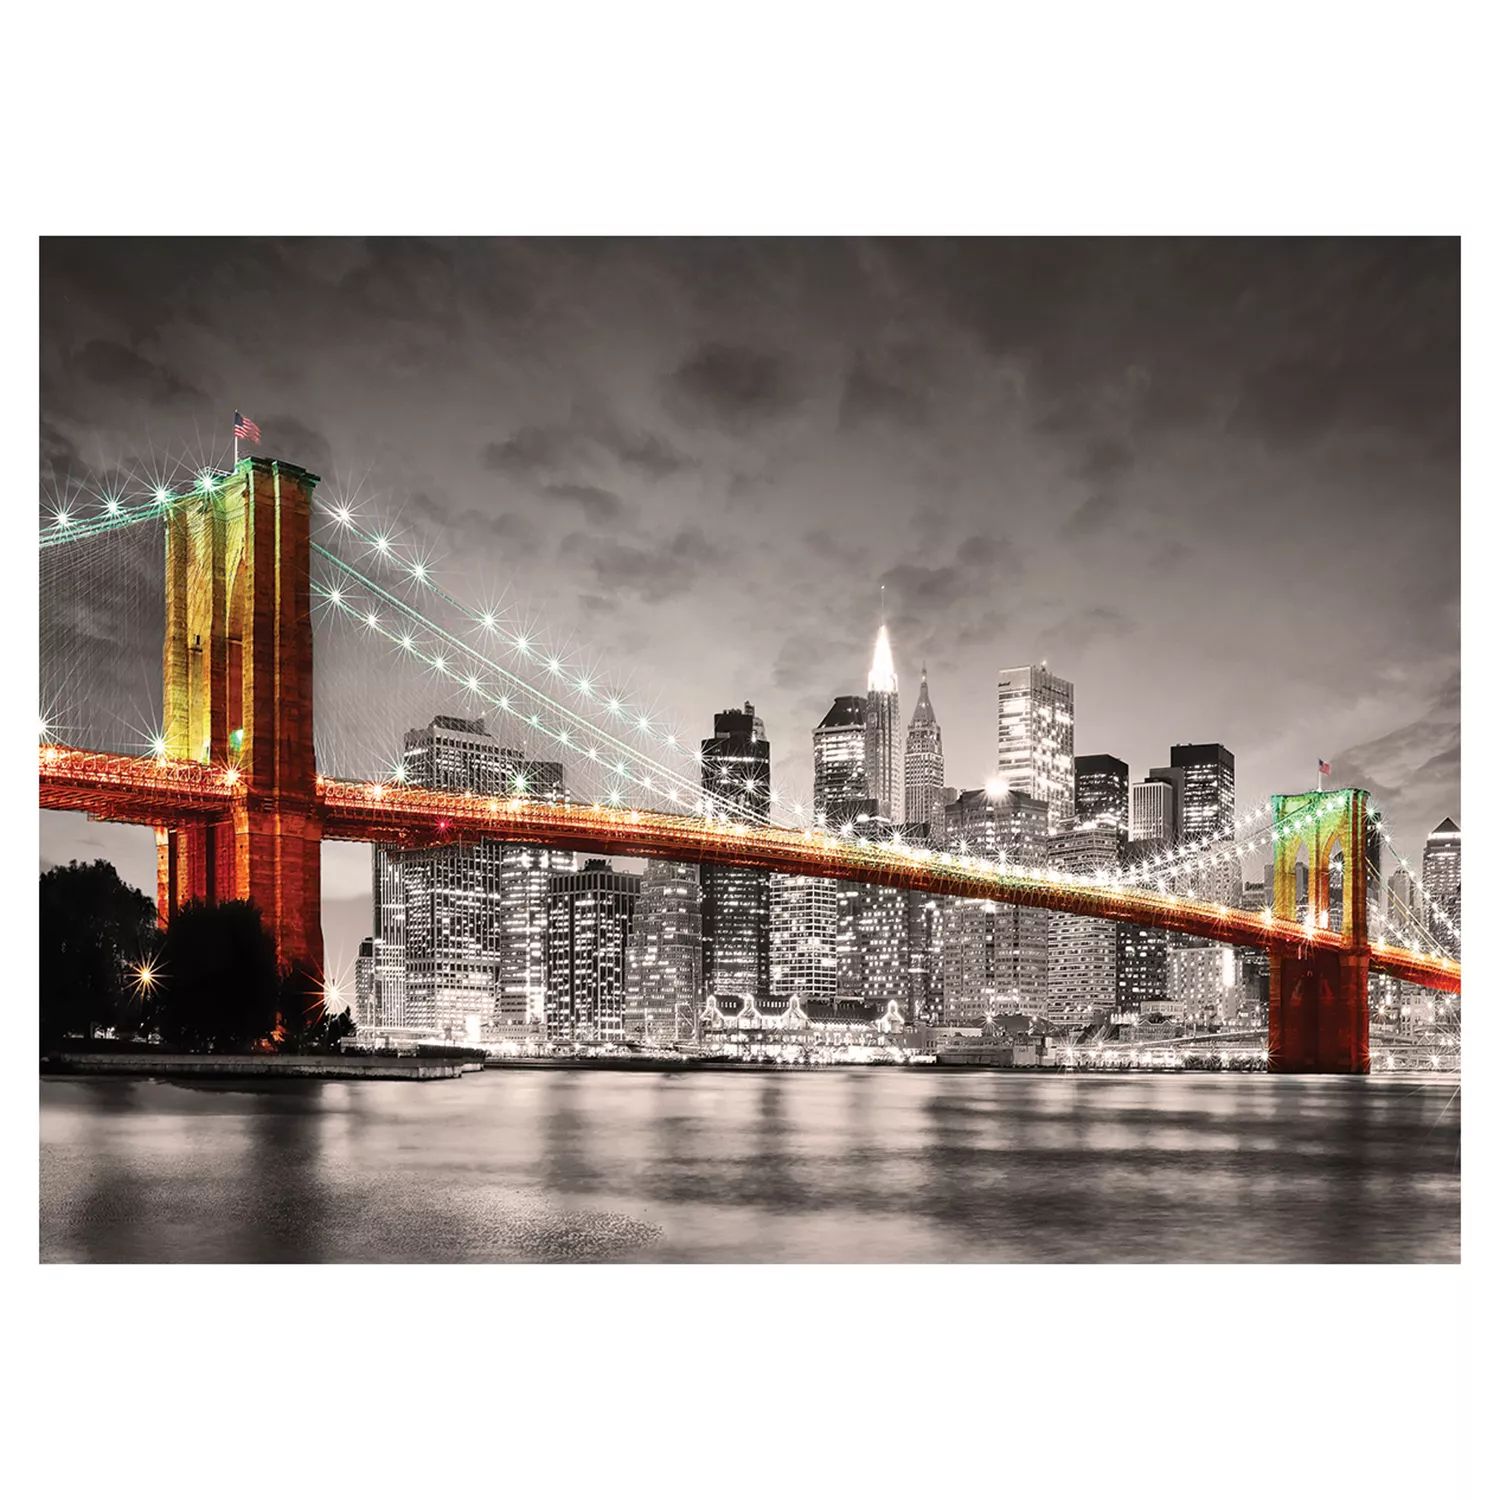 Еврографика 1000 шт. Городская коллекция Нью-Йорк Бруклинский мост Пазл Eurographics пазл trefl 1000 деталей бруклинский мост нью йорк сша